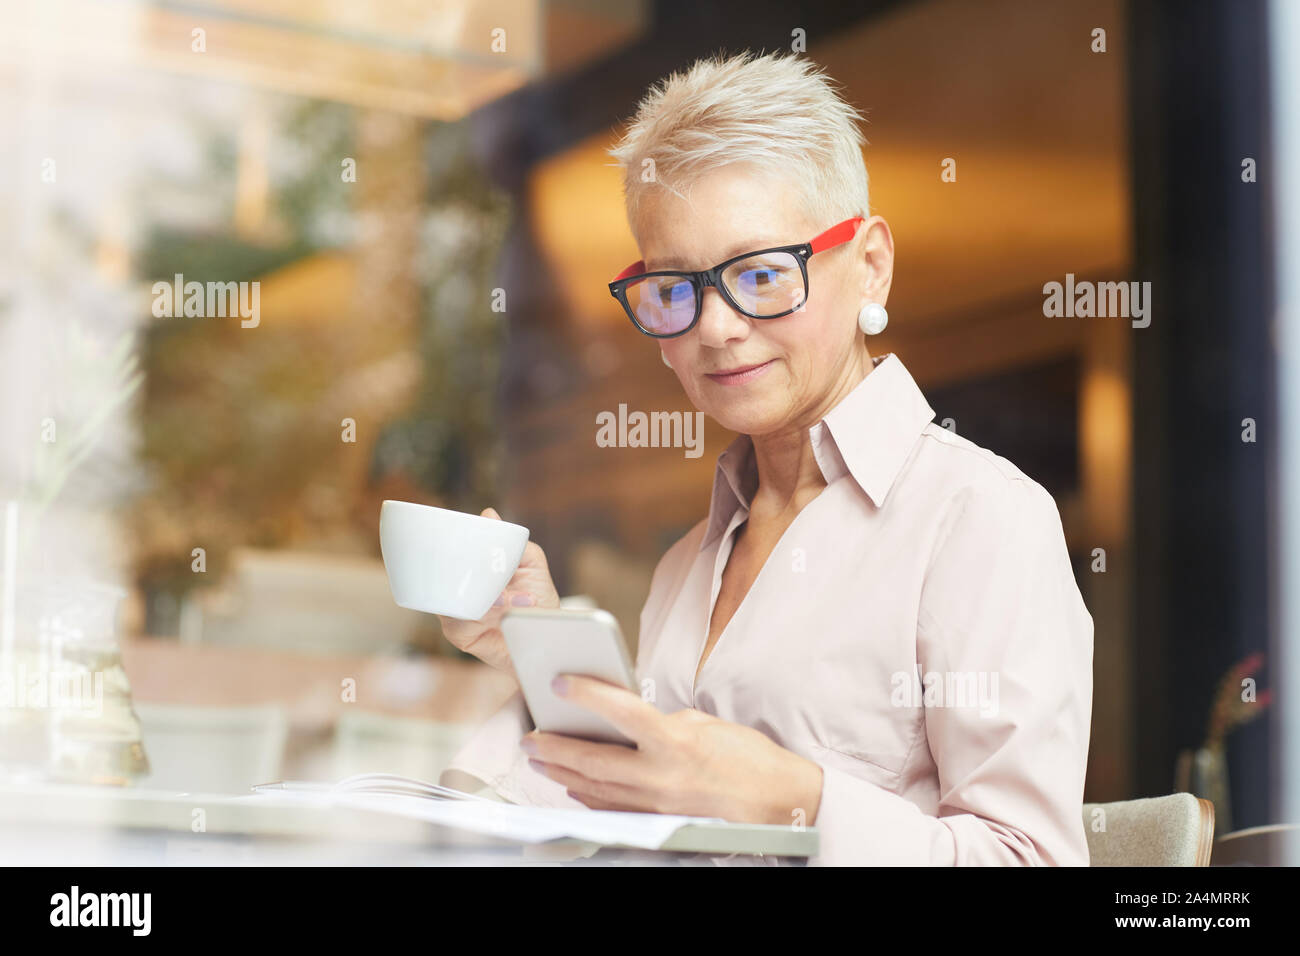 Femme mature avec de courts cheveux blonds en utilisant son téléphone portable tout en buvant du café pendant pause café dans cafe Banque D'Images